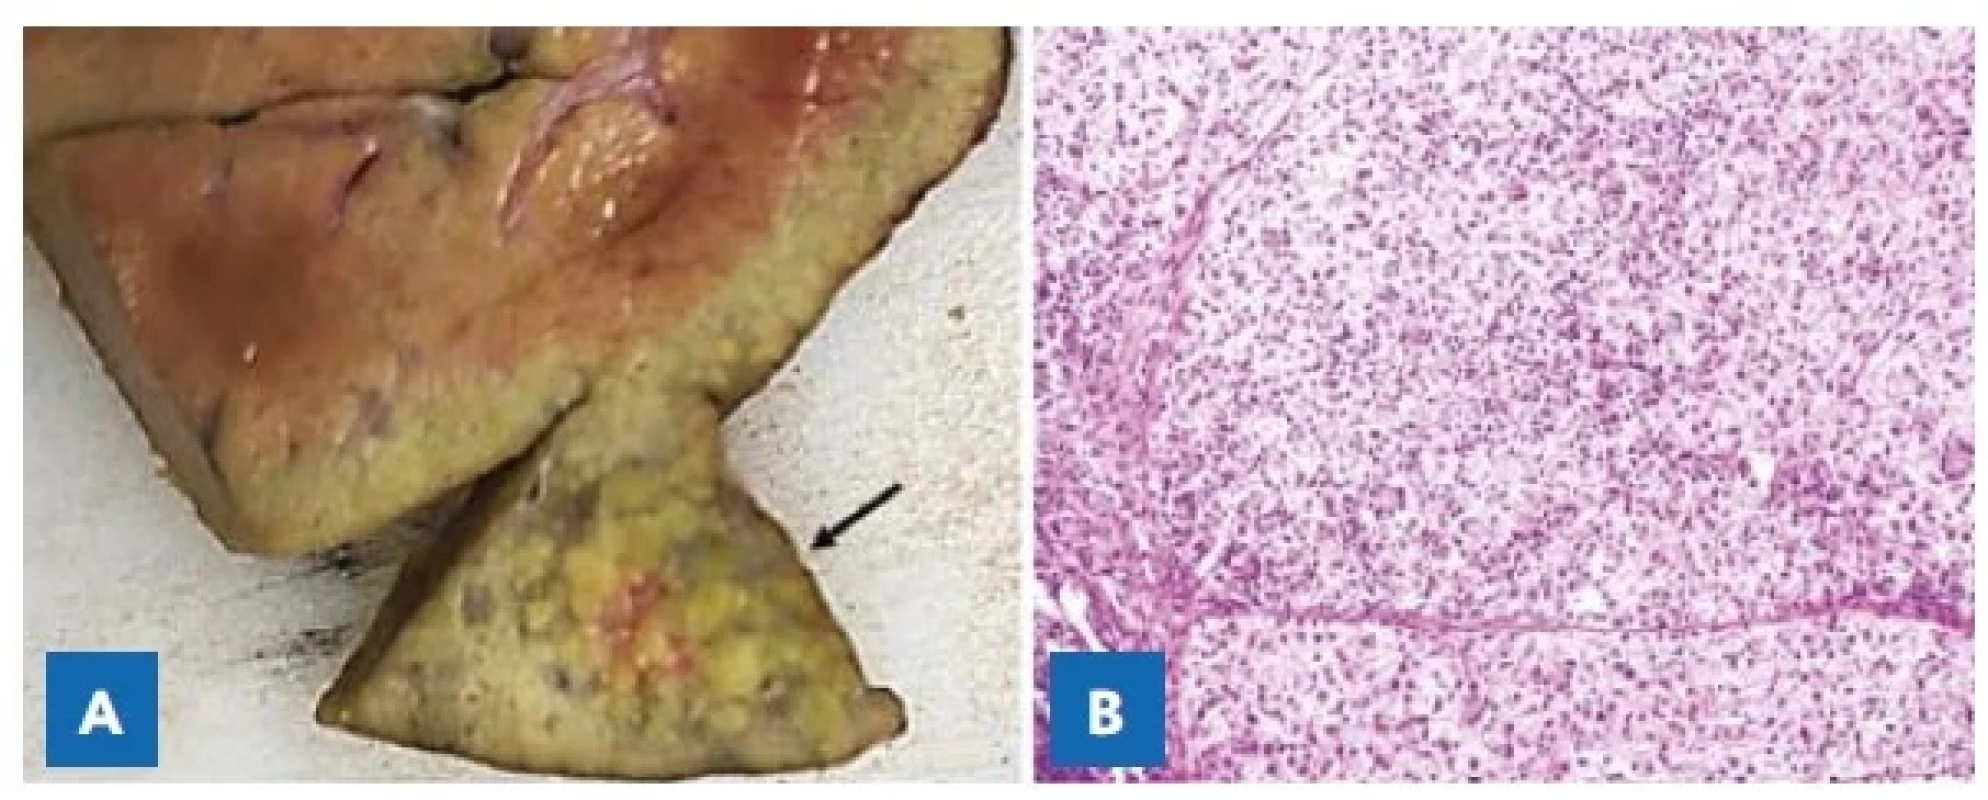 A – Solitární ložisko hepatocelulárního karcinomu (šipka)
v levém laloku jater u čtrnáctiměsíčního chlapce s tyrosinemií typ 1.<br>
B – Mikroskopický obraz dobře diferencovaného hepatocelulárního
karcinomu. Hematoxylin-eozin, pův. zvětšení 400×.